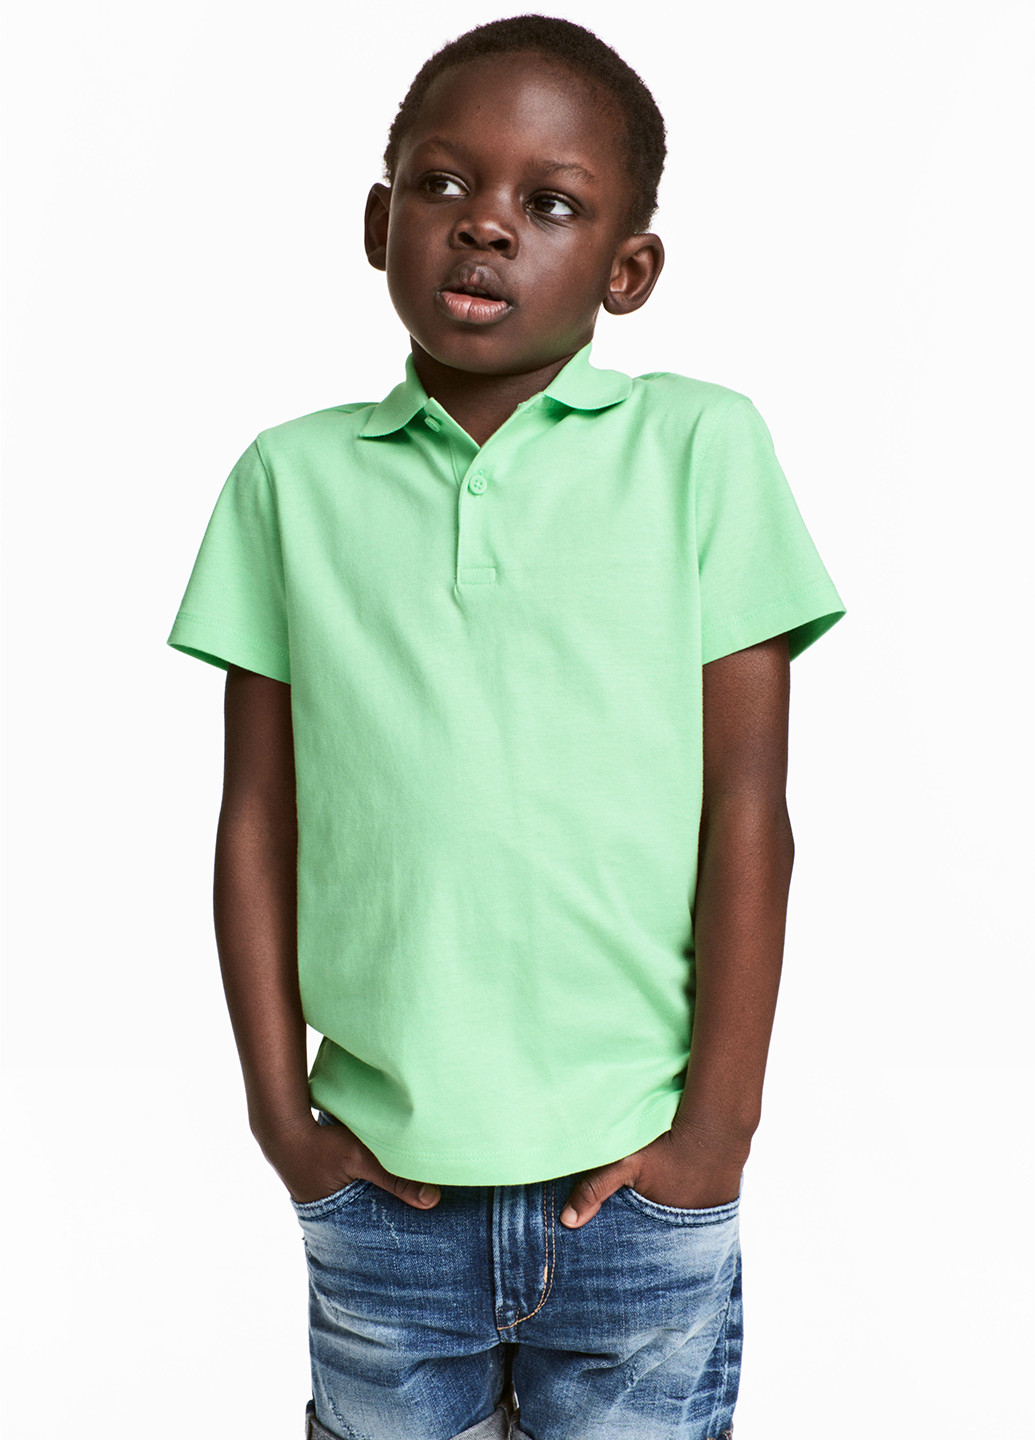 Салатовая детская футболка-поло для мальчика H&M